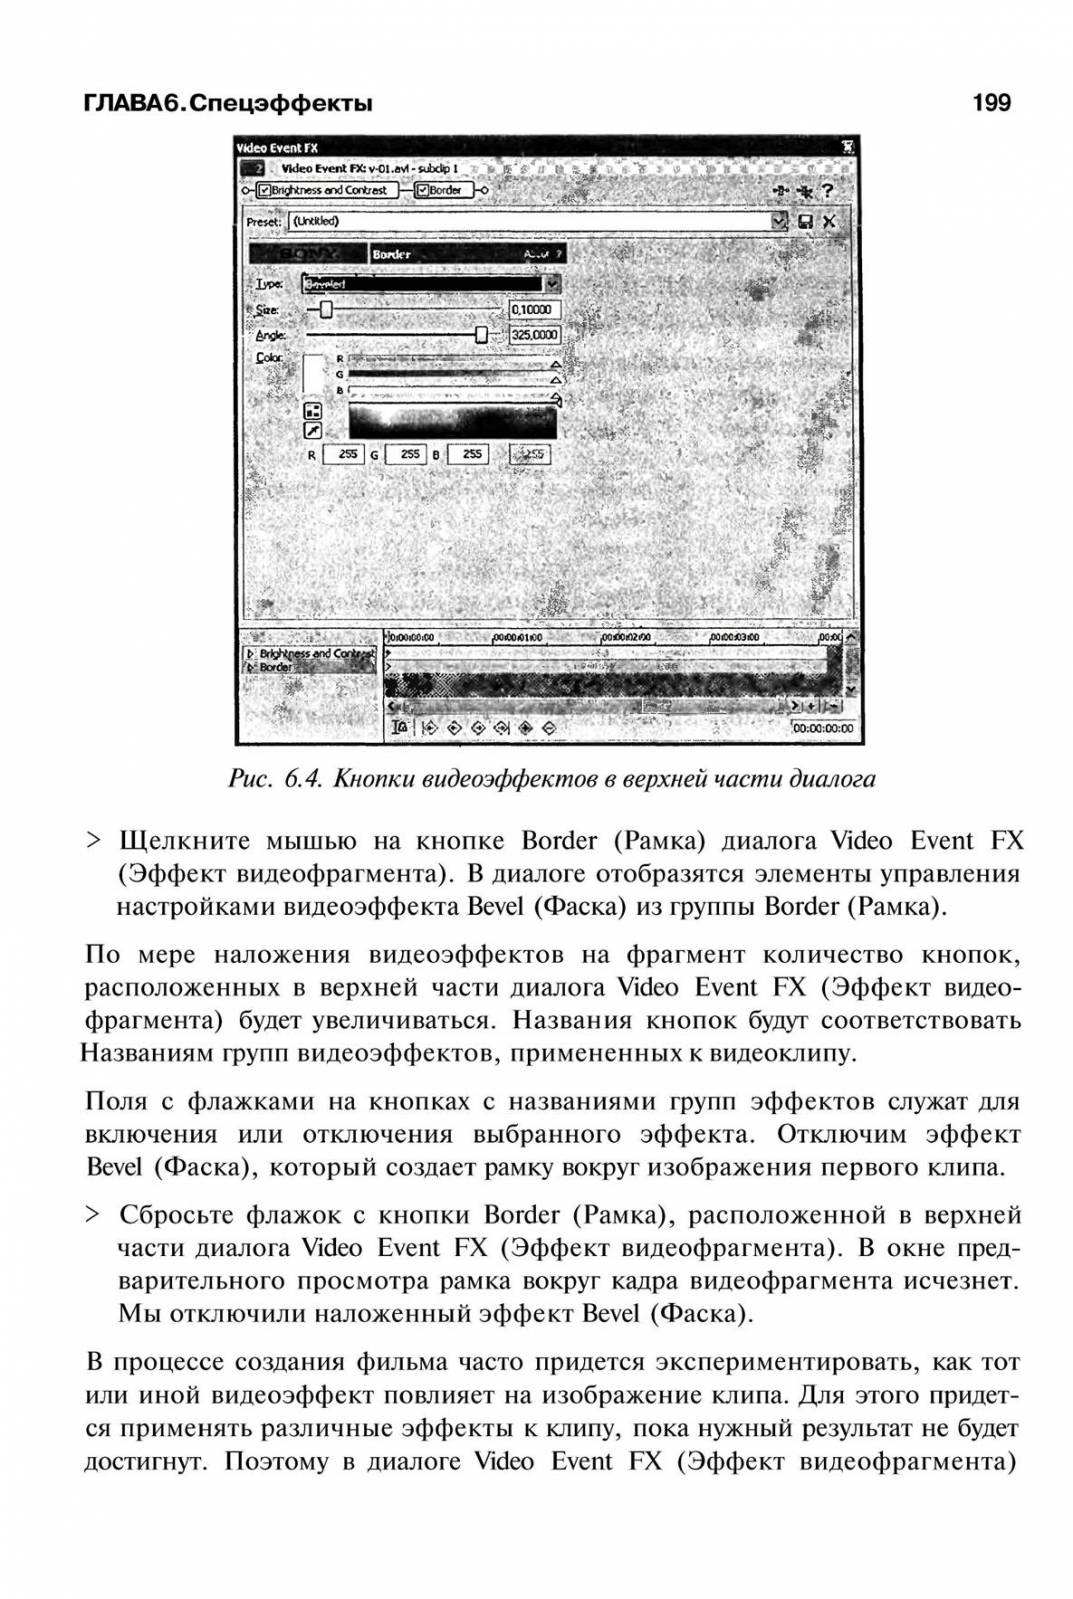 http://redaktori-uroki.3dn.ru/_ph/14/489622769.jpg